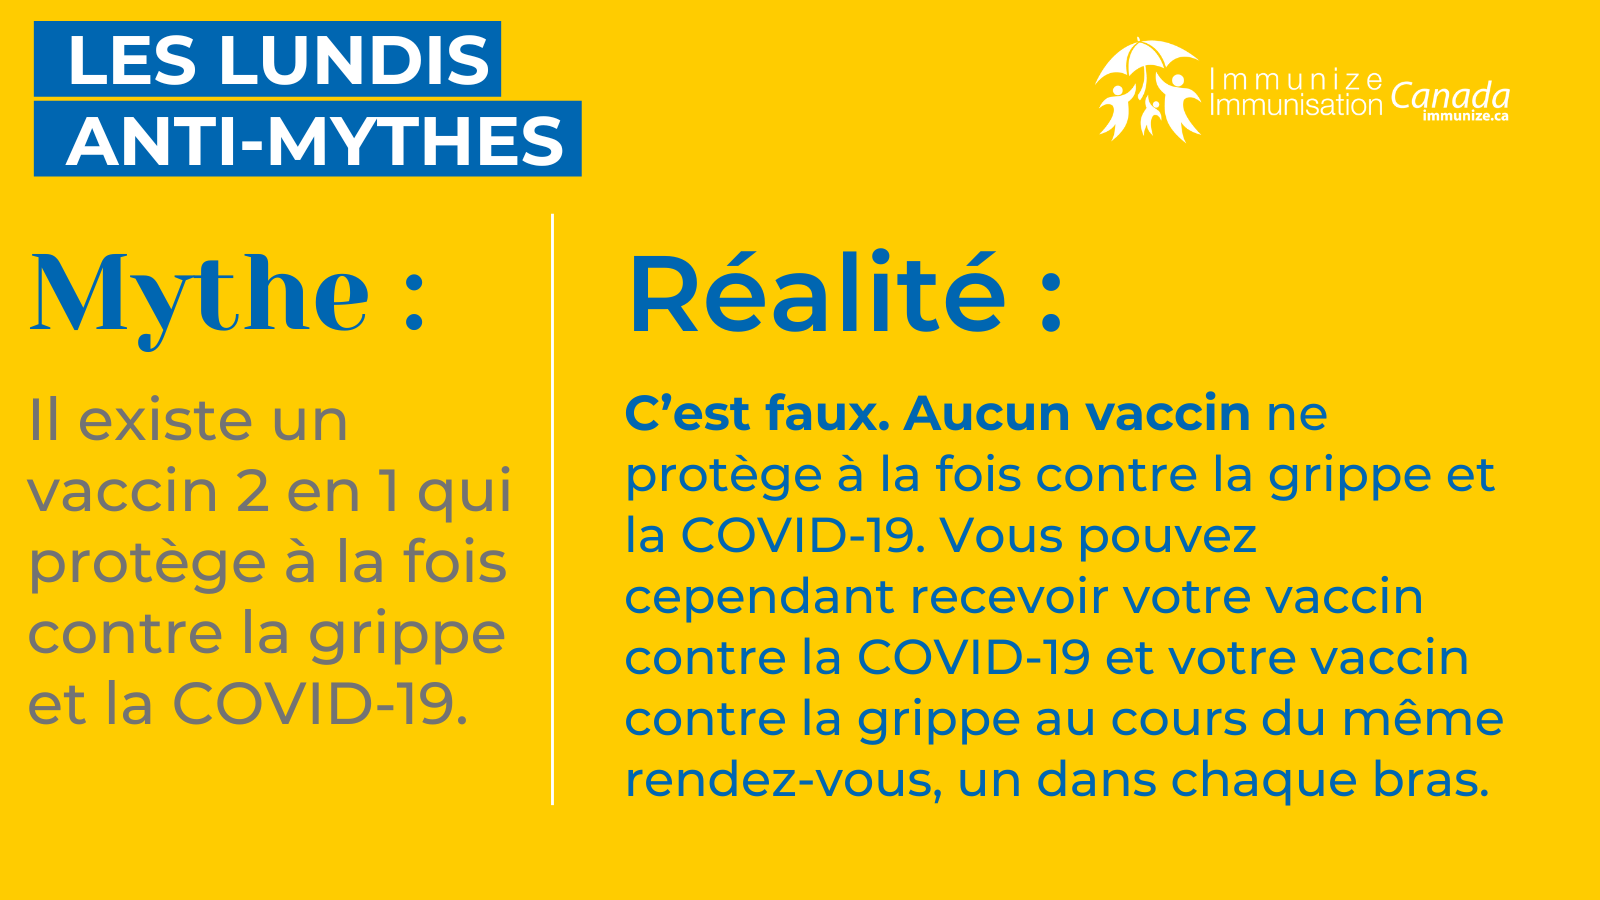 ​Les lundis anti-mythes - influenza et COVID-19 - image 2 pour Twitter/X